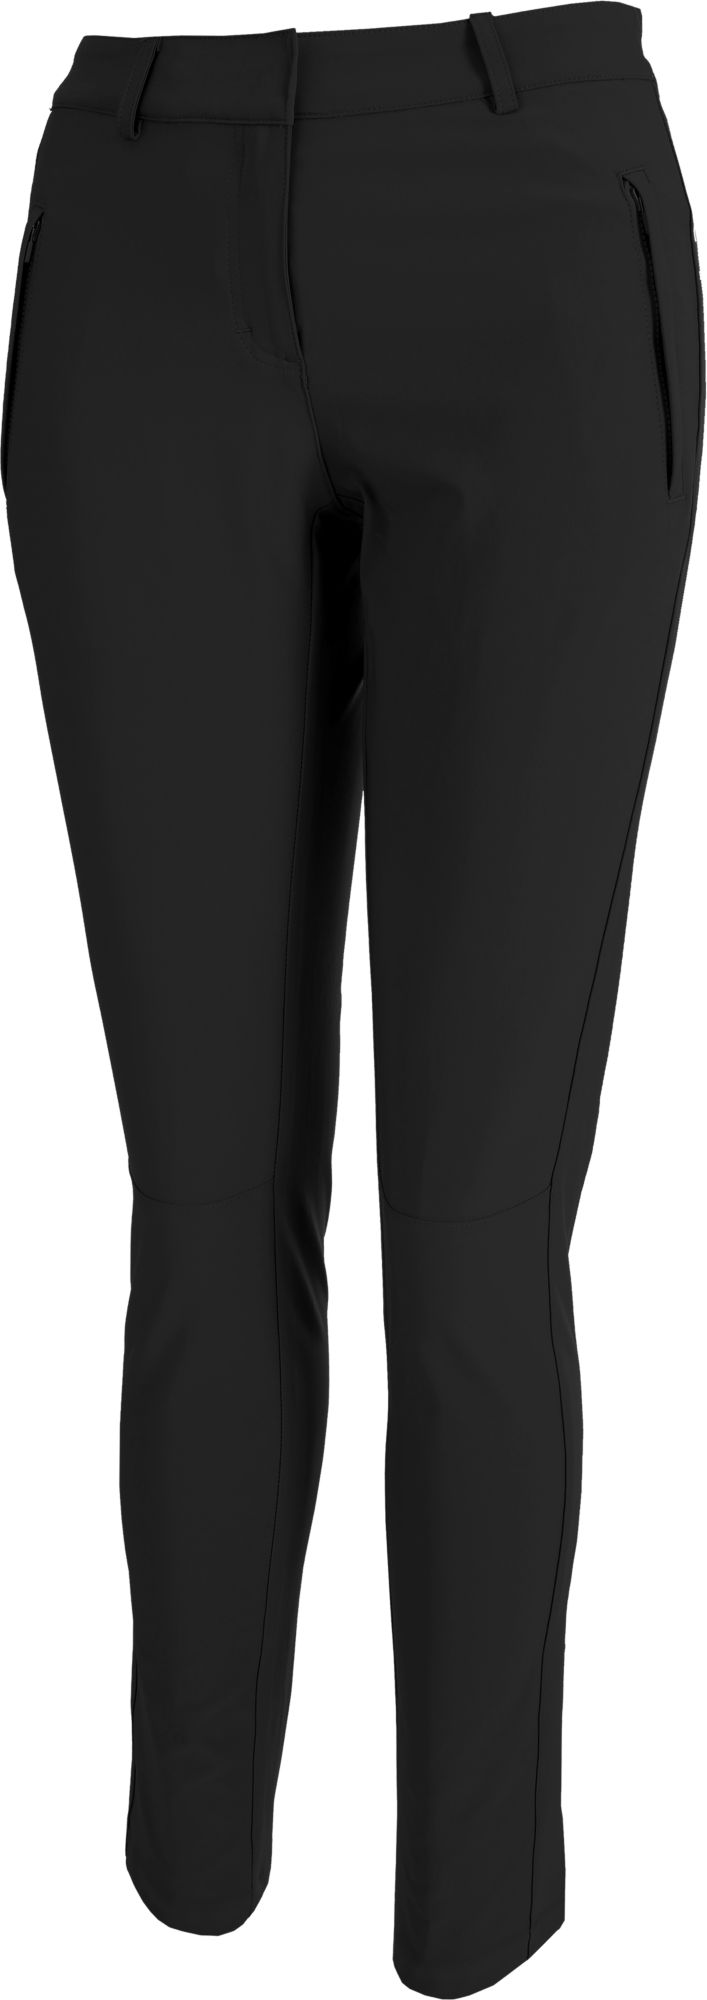 puma women's tech golf pants